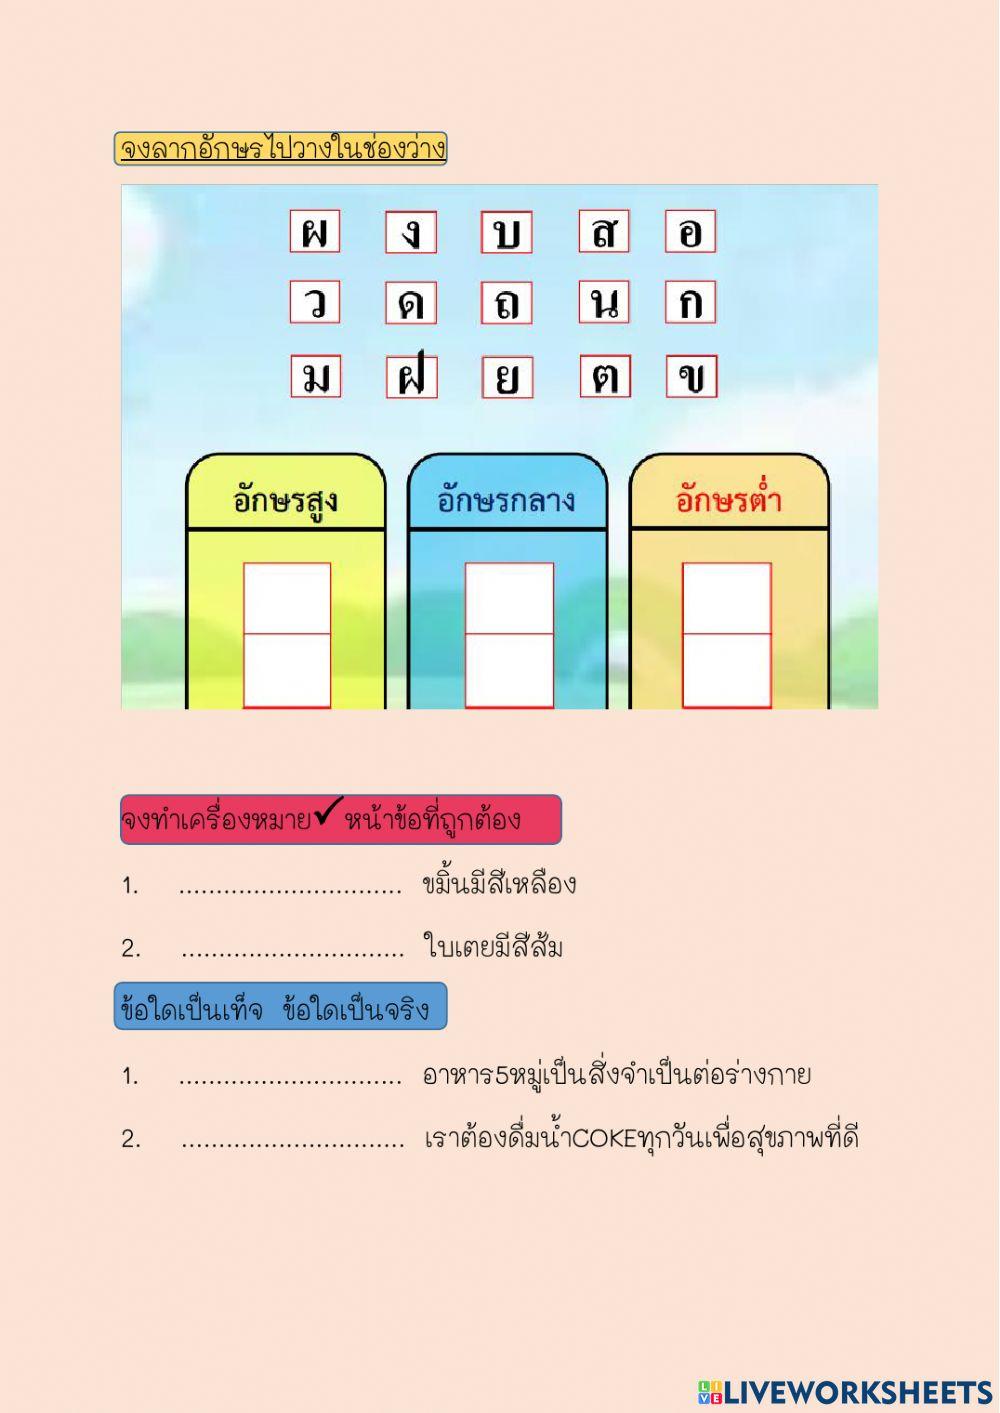 ครูภาษาไทยรร.ปลายพระยาวิทยาคม ฝึกออกแบบ